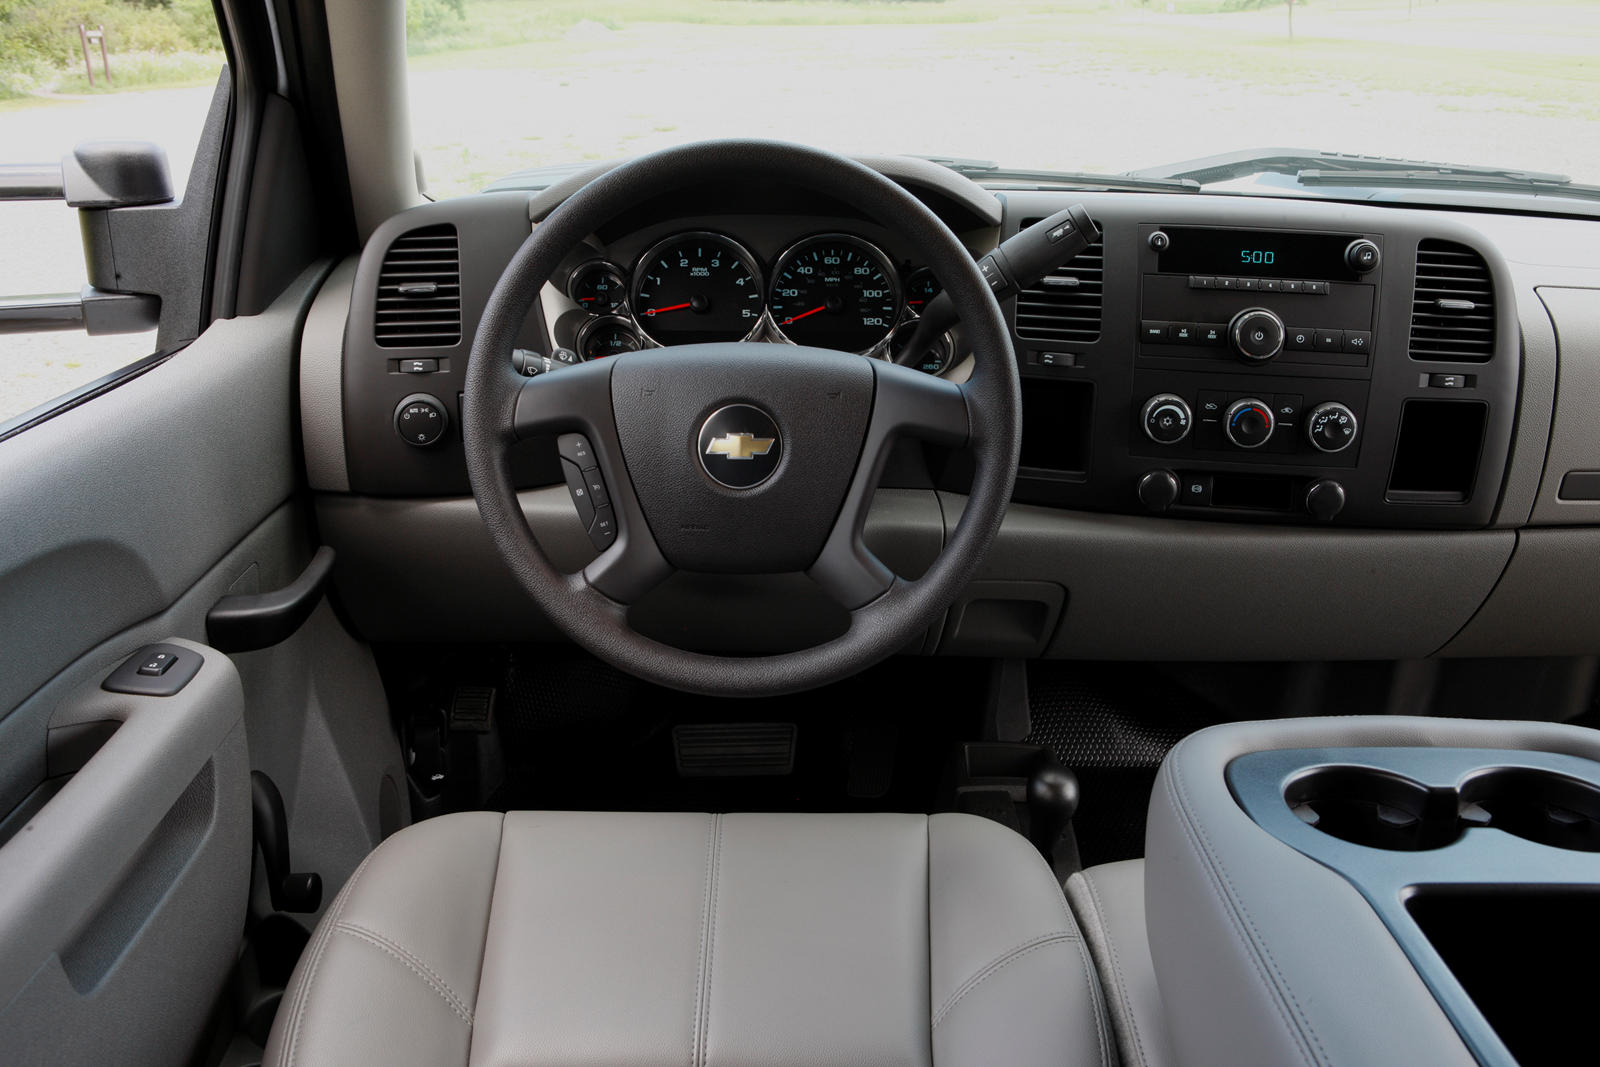 2013 Chevrolet Silverado 2500HD Steering Wheel